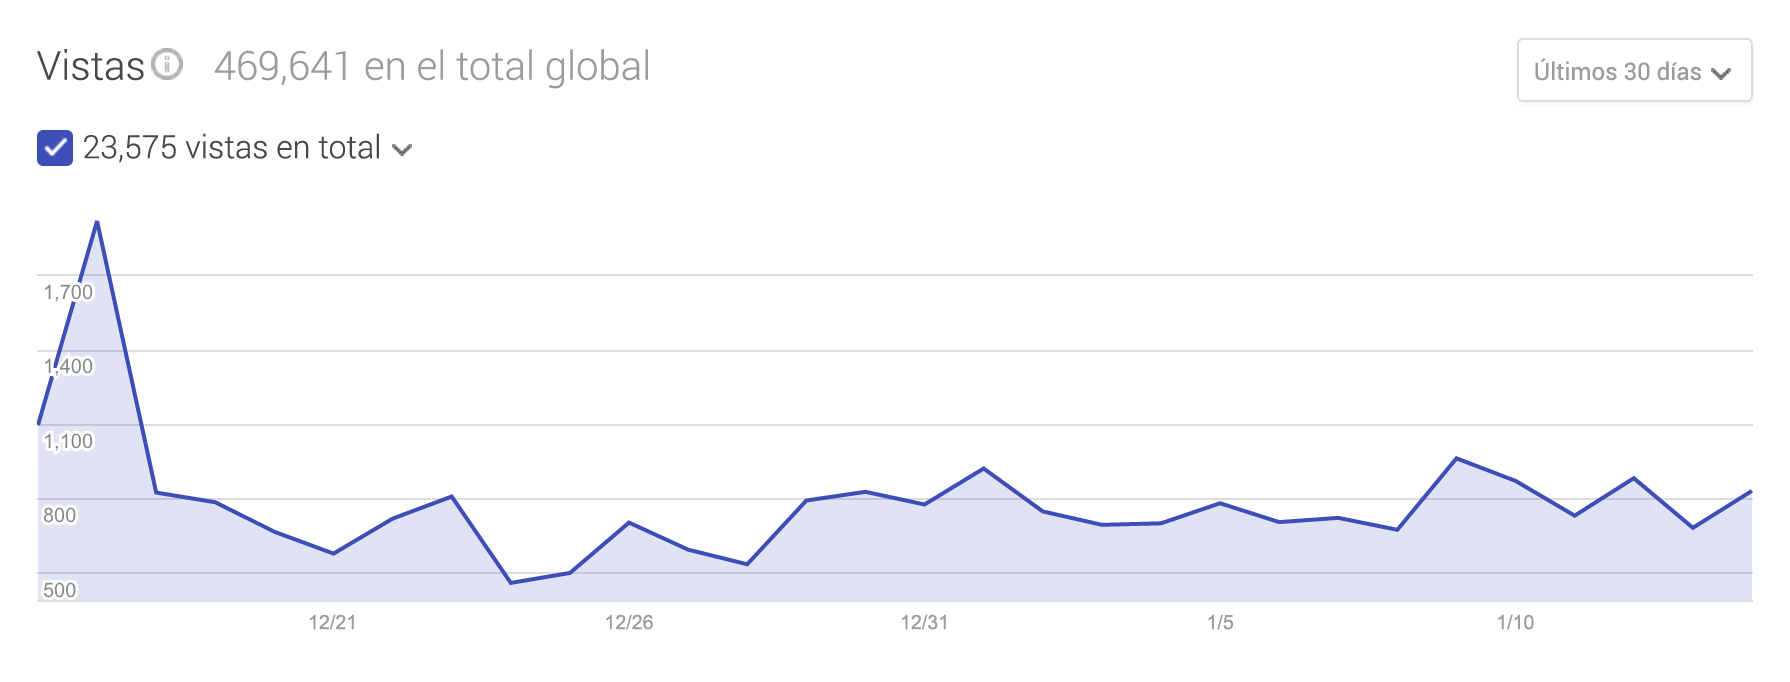 Gráfico estadístico de visitas en total en google my business